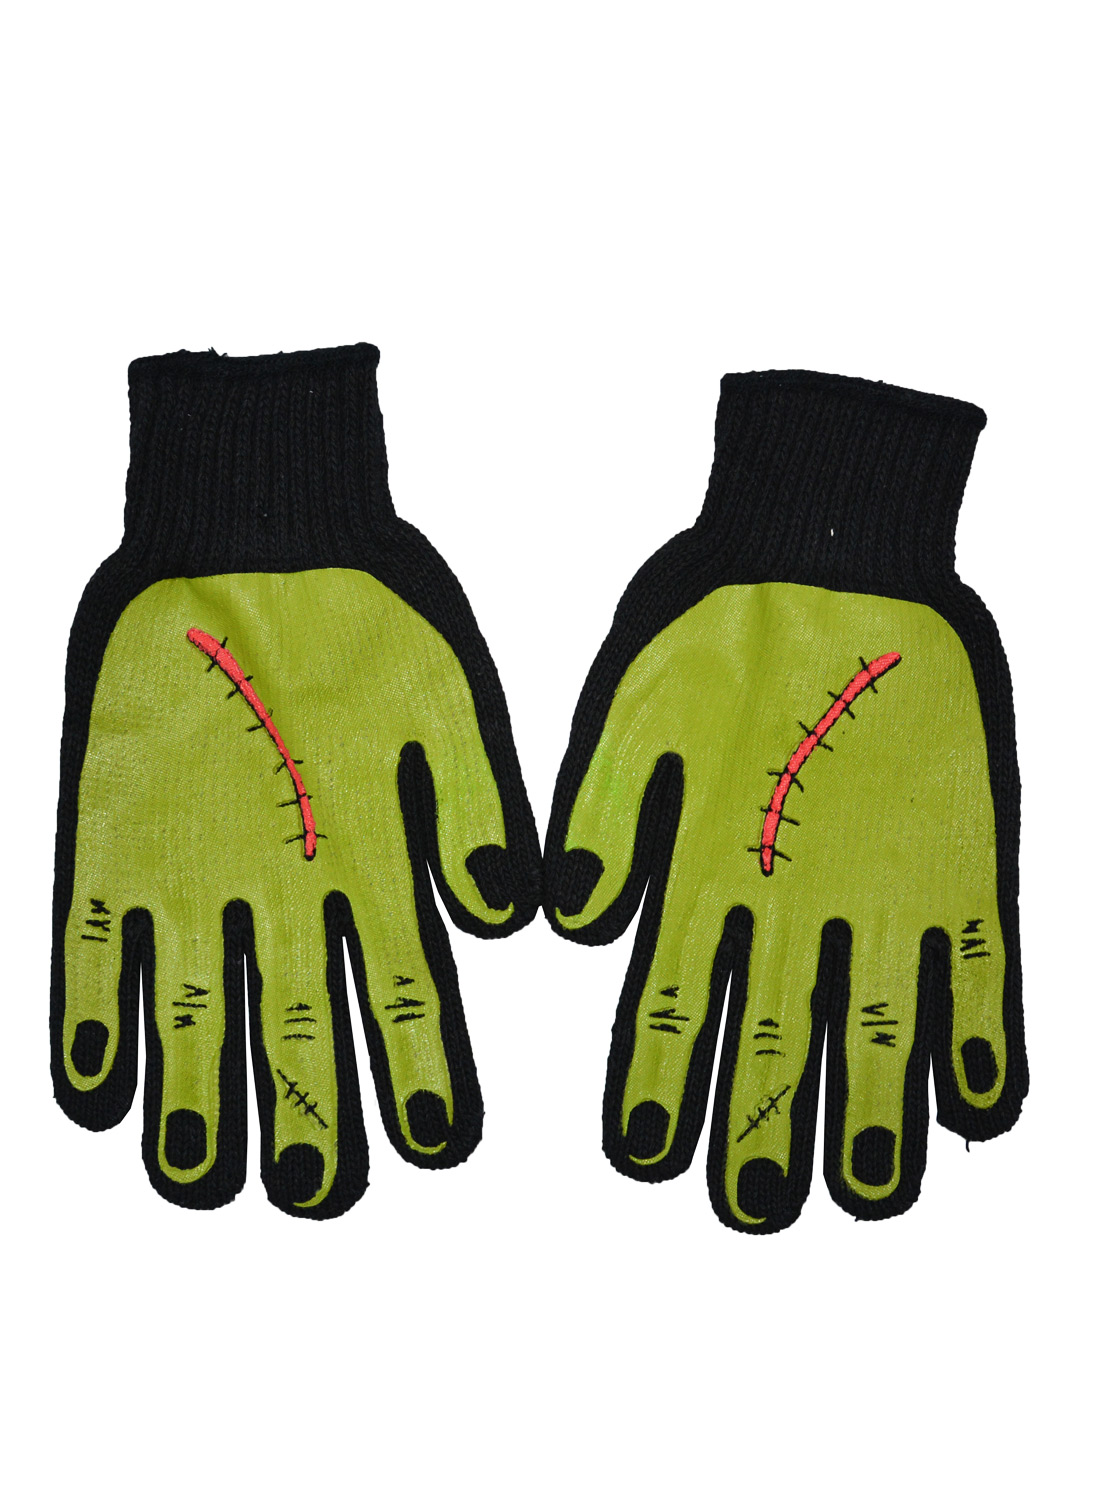 Frankenstein Hands Knit Gloves